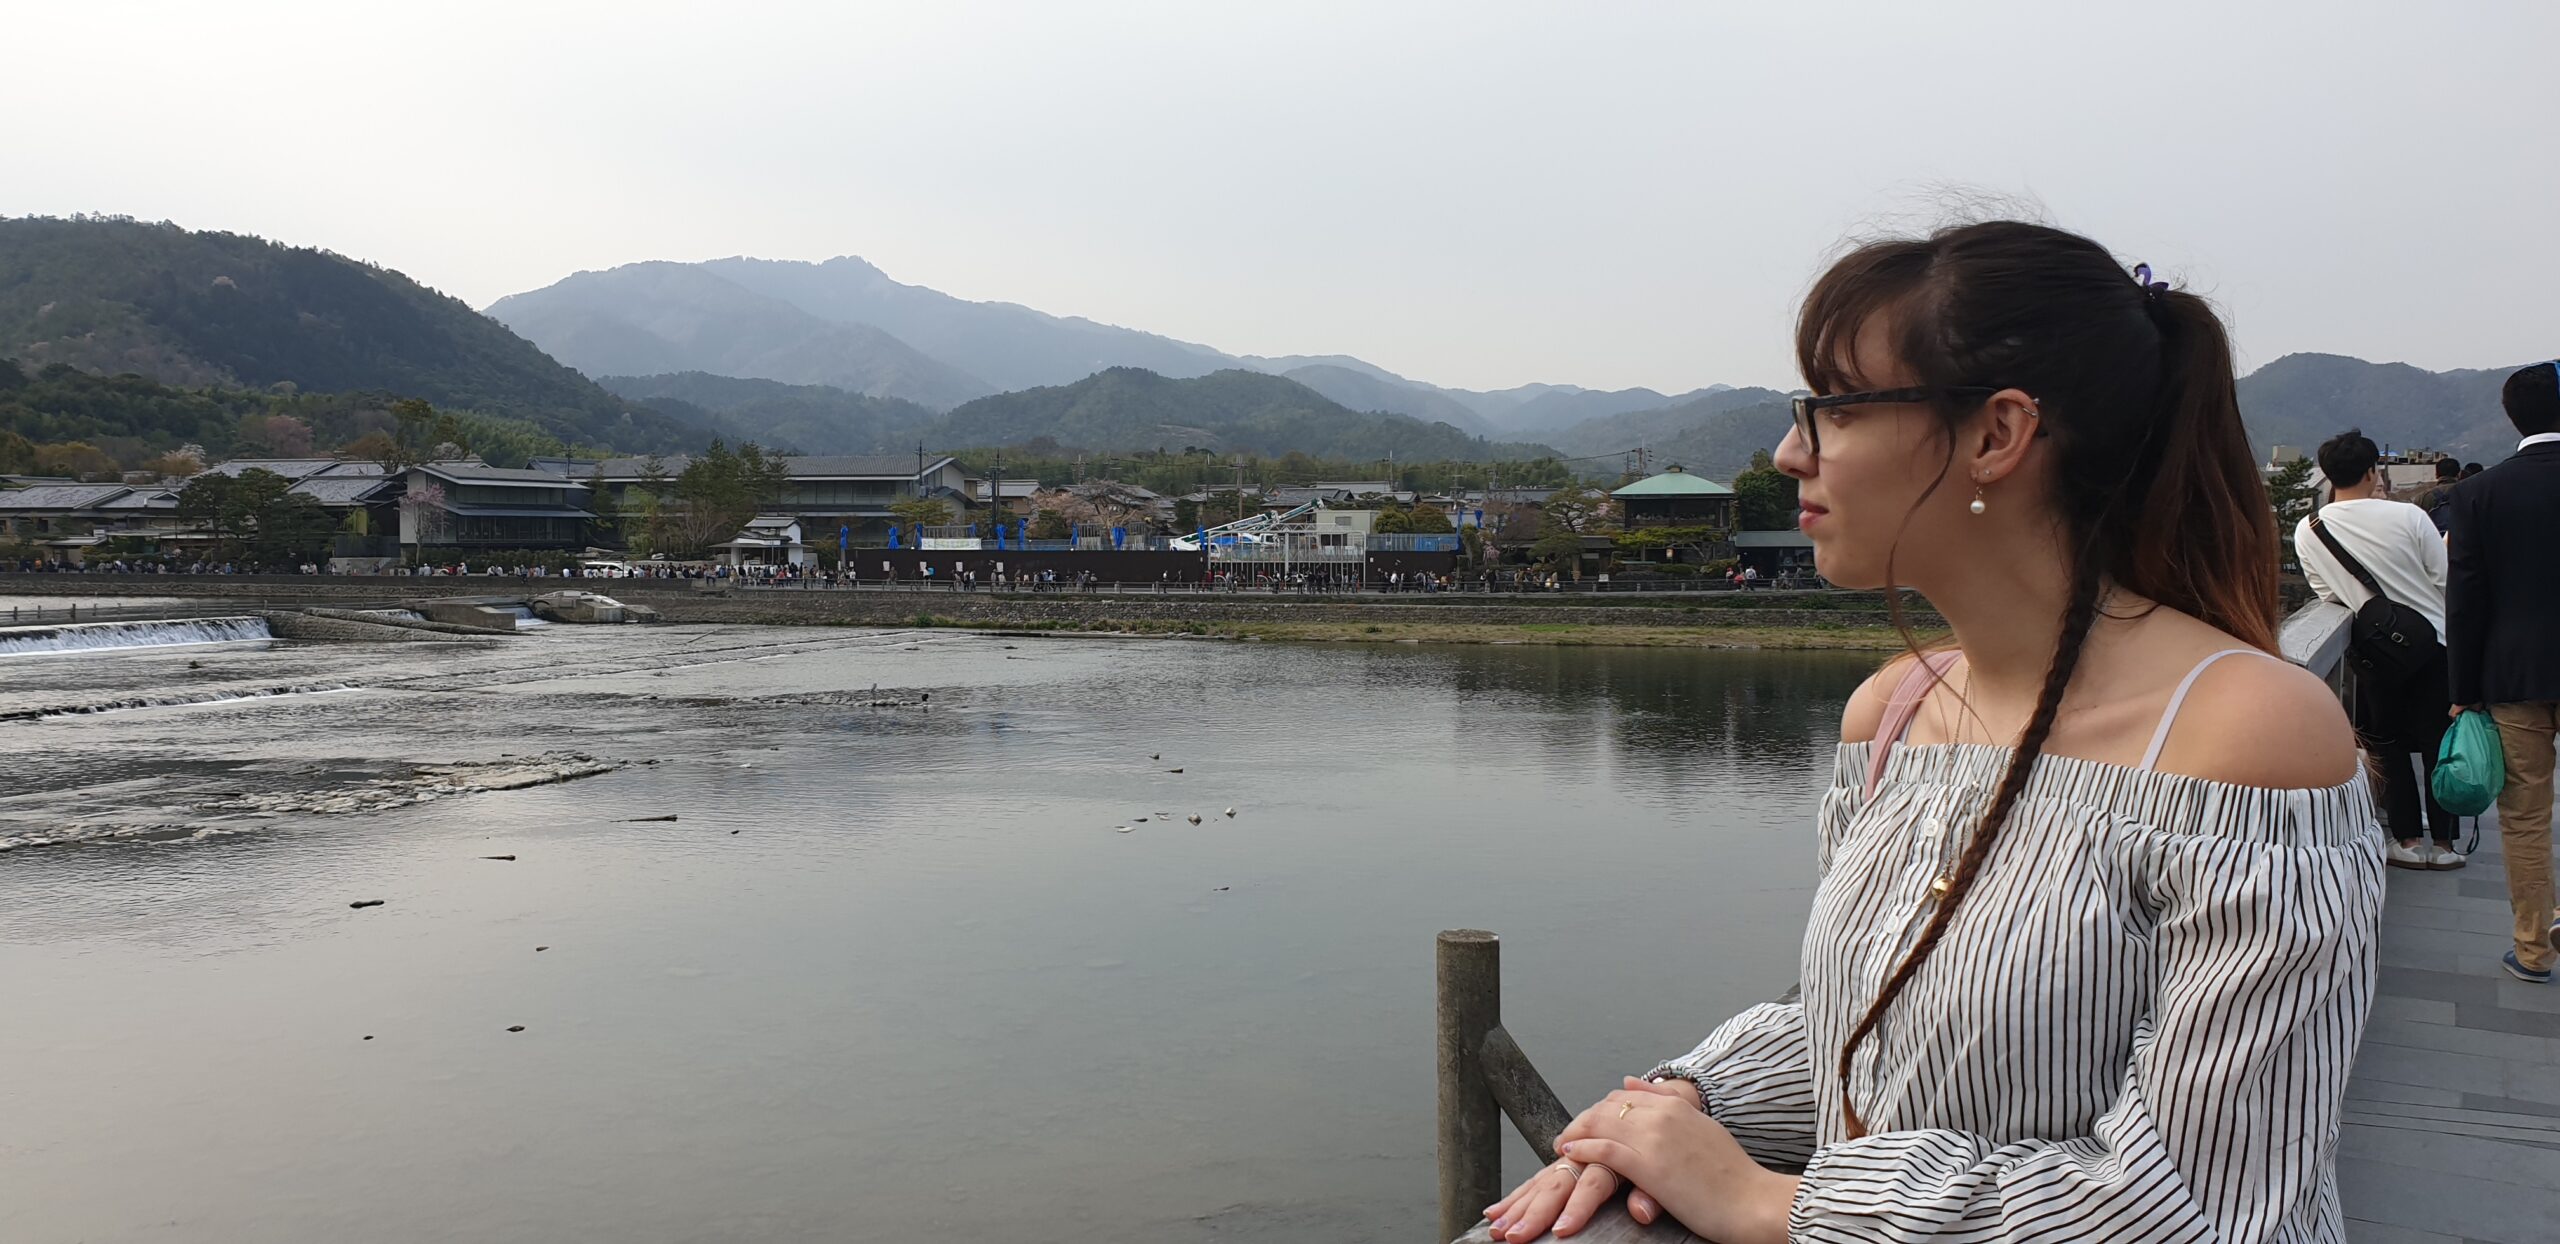 femme de profil cheveux attaché avec une tresse sur le côté elle regarde une rivière calme avec un village et des montagnes en fond.